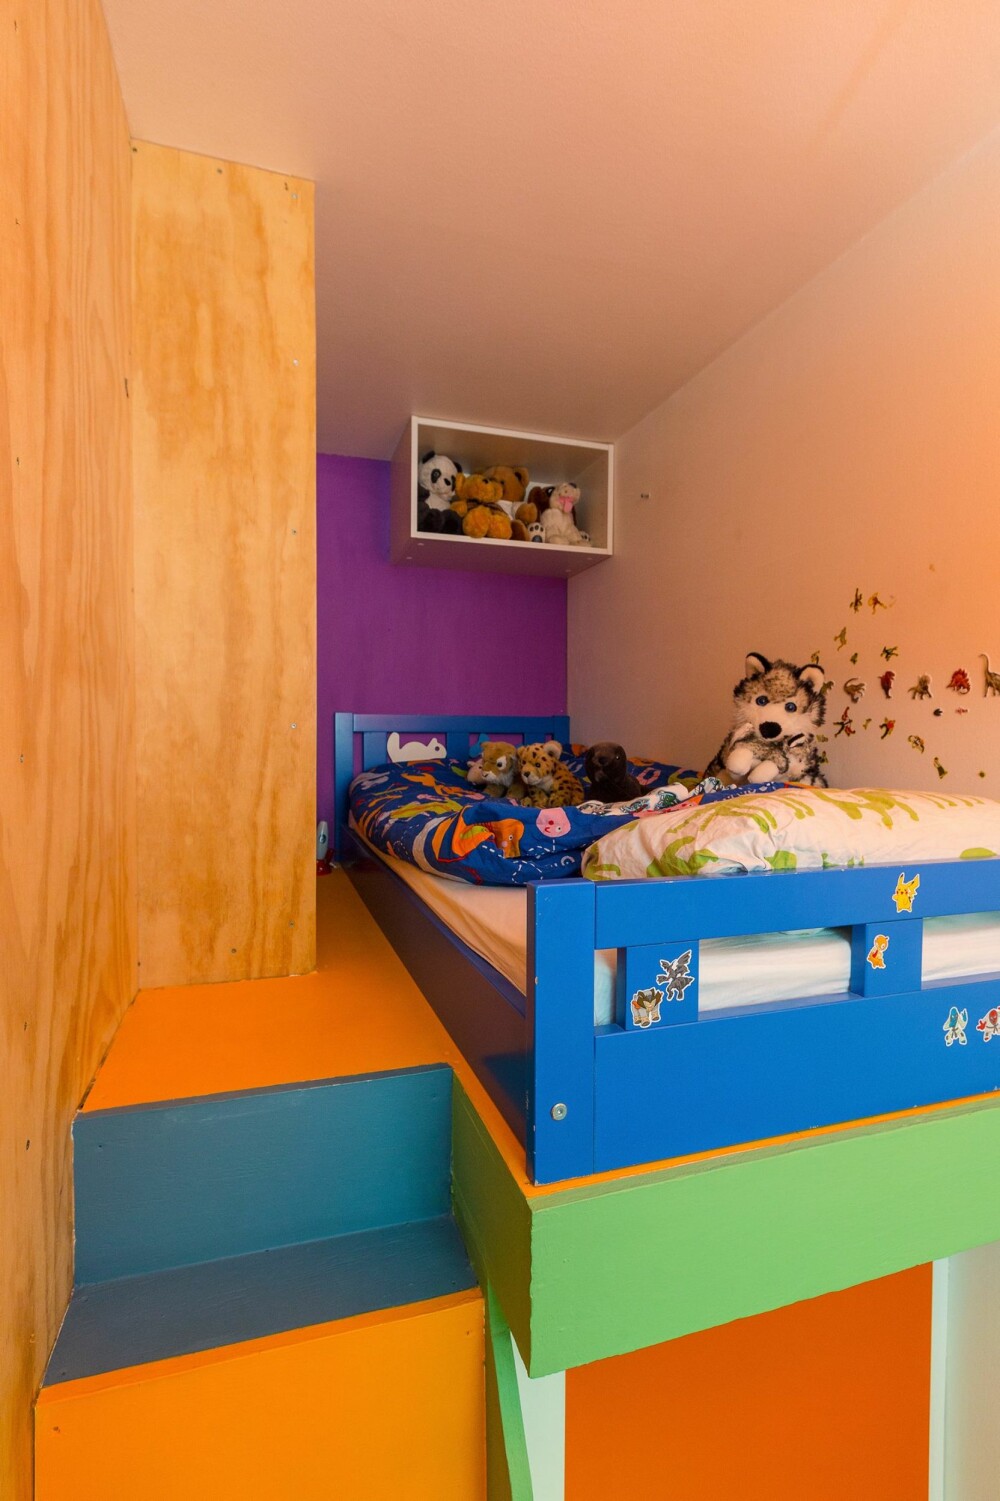 FARGEGLAD SENG: Arkitekten har vært opptatt av å innrede med sterke farger basert på Montessoris fargepedagogikk om barns utvikling.